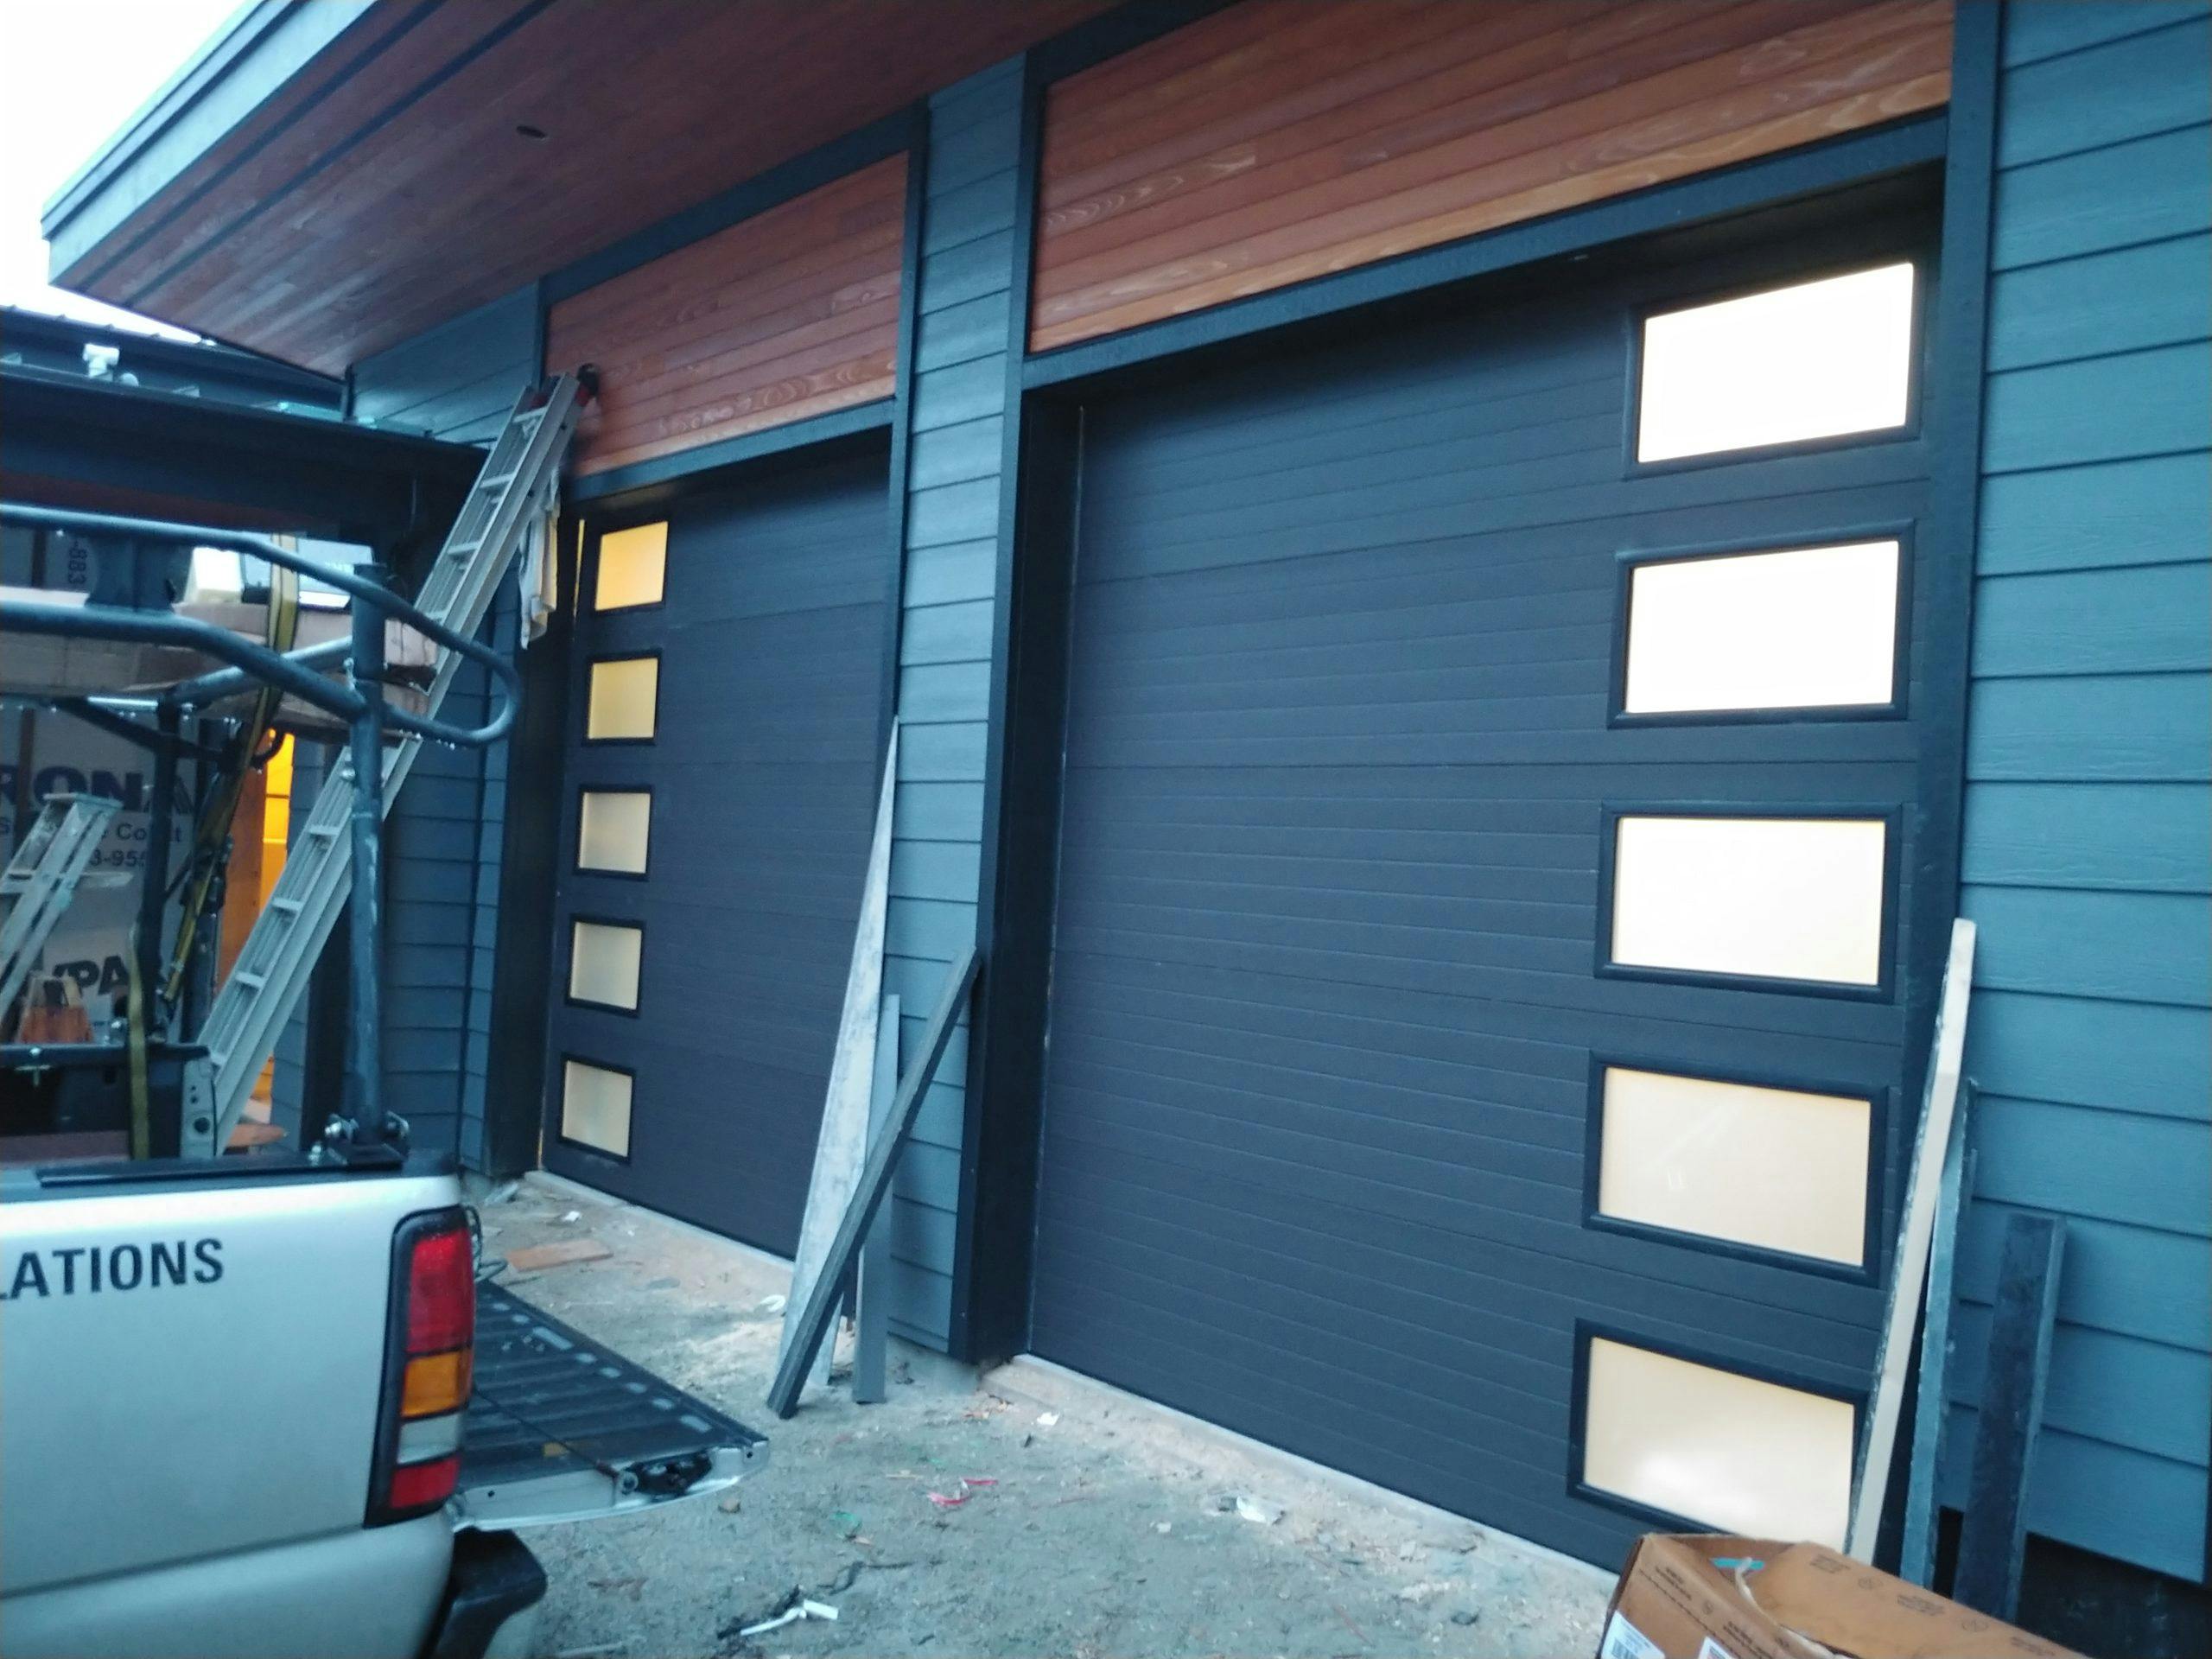 A garage door repair in progress